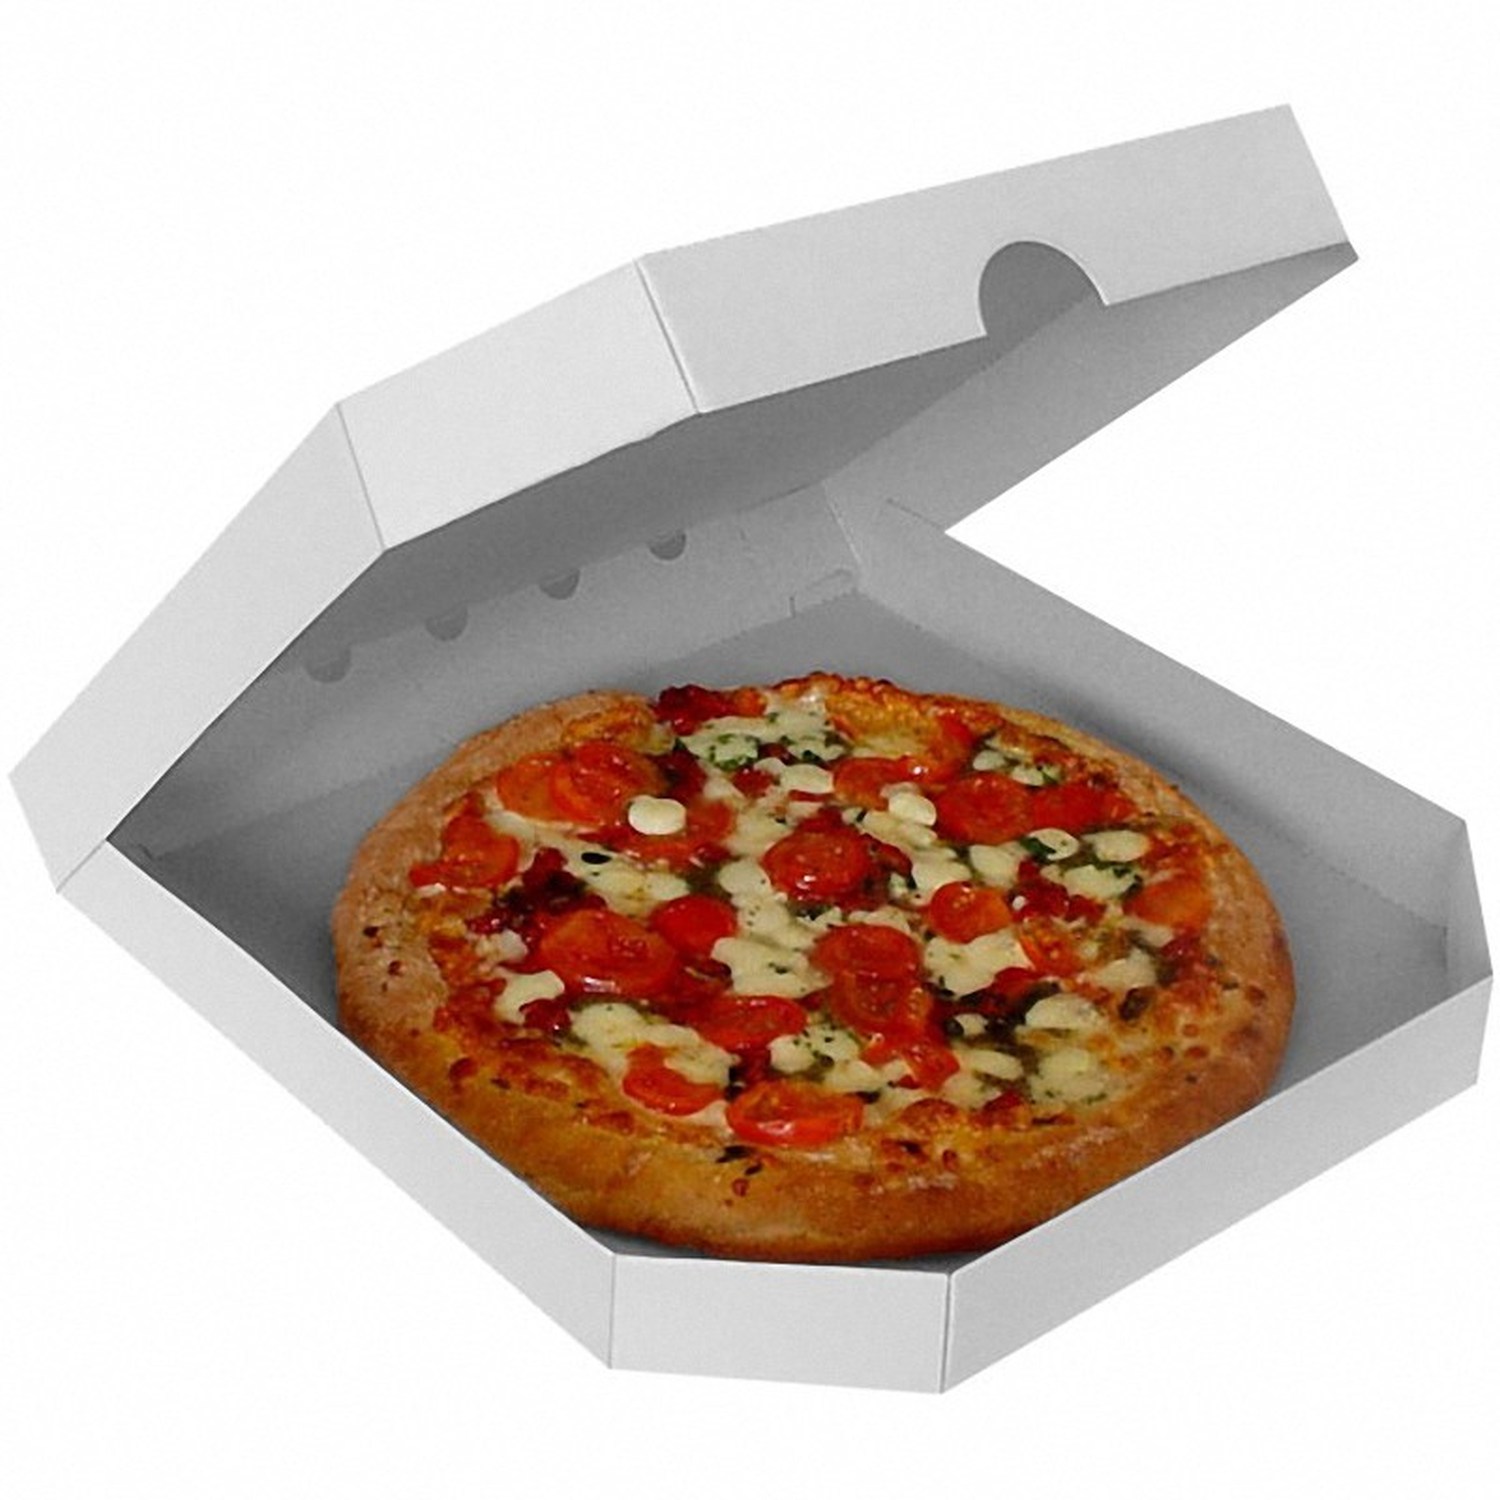 Pizzakarton -extra stark- wei, 32 x 32 x 3 cm, 100 Stk.